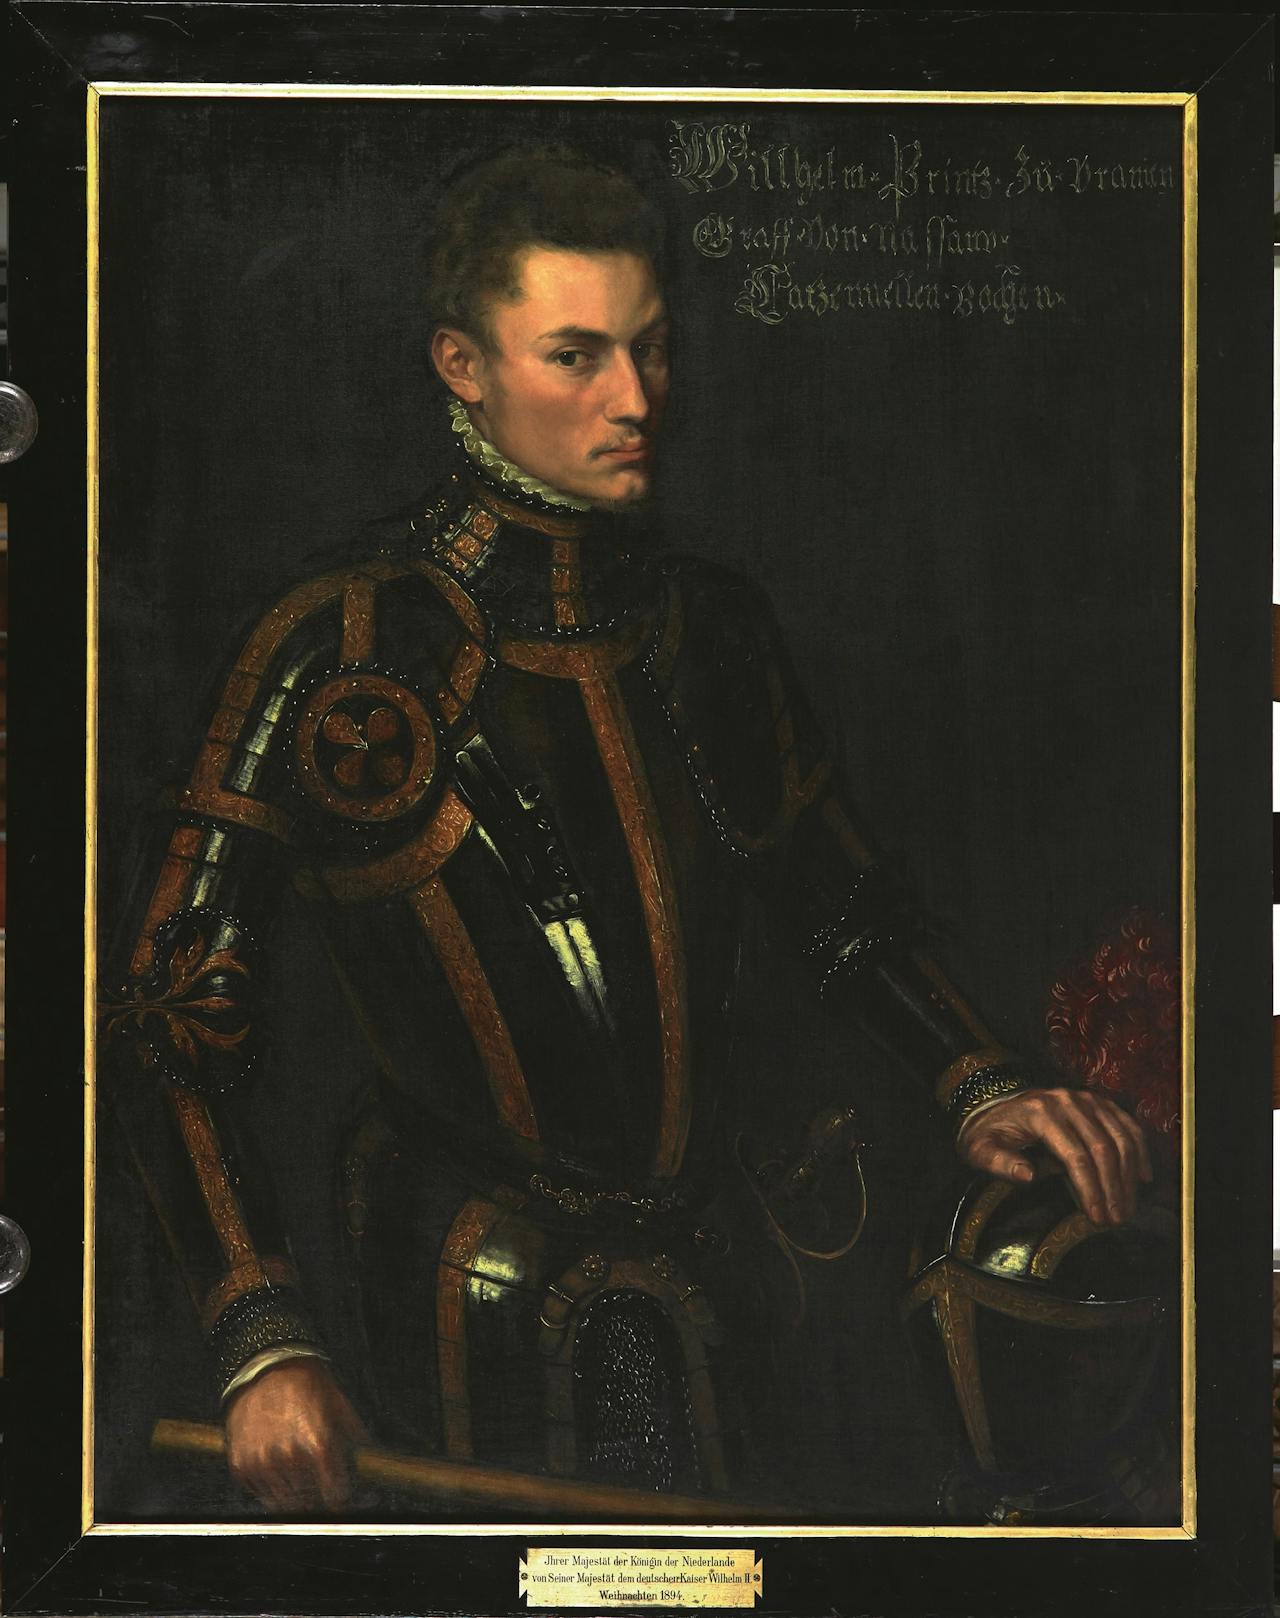 Het portret van Willem van Oranje, in 1555 geschilderd door Anthonis Mor van Dashorst.